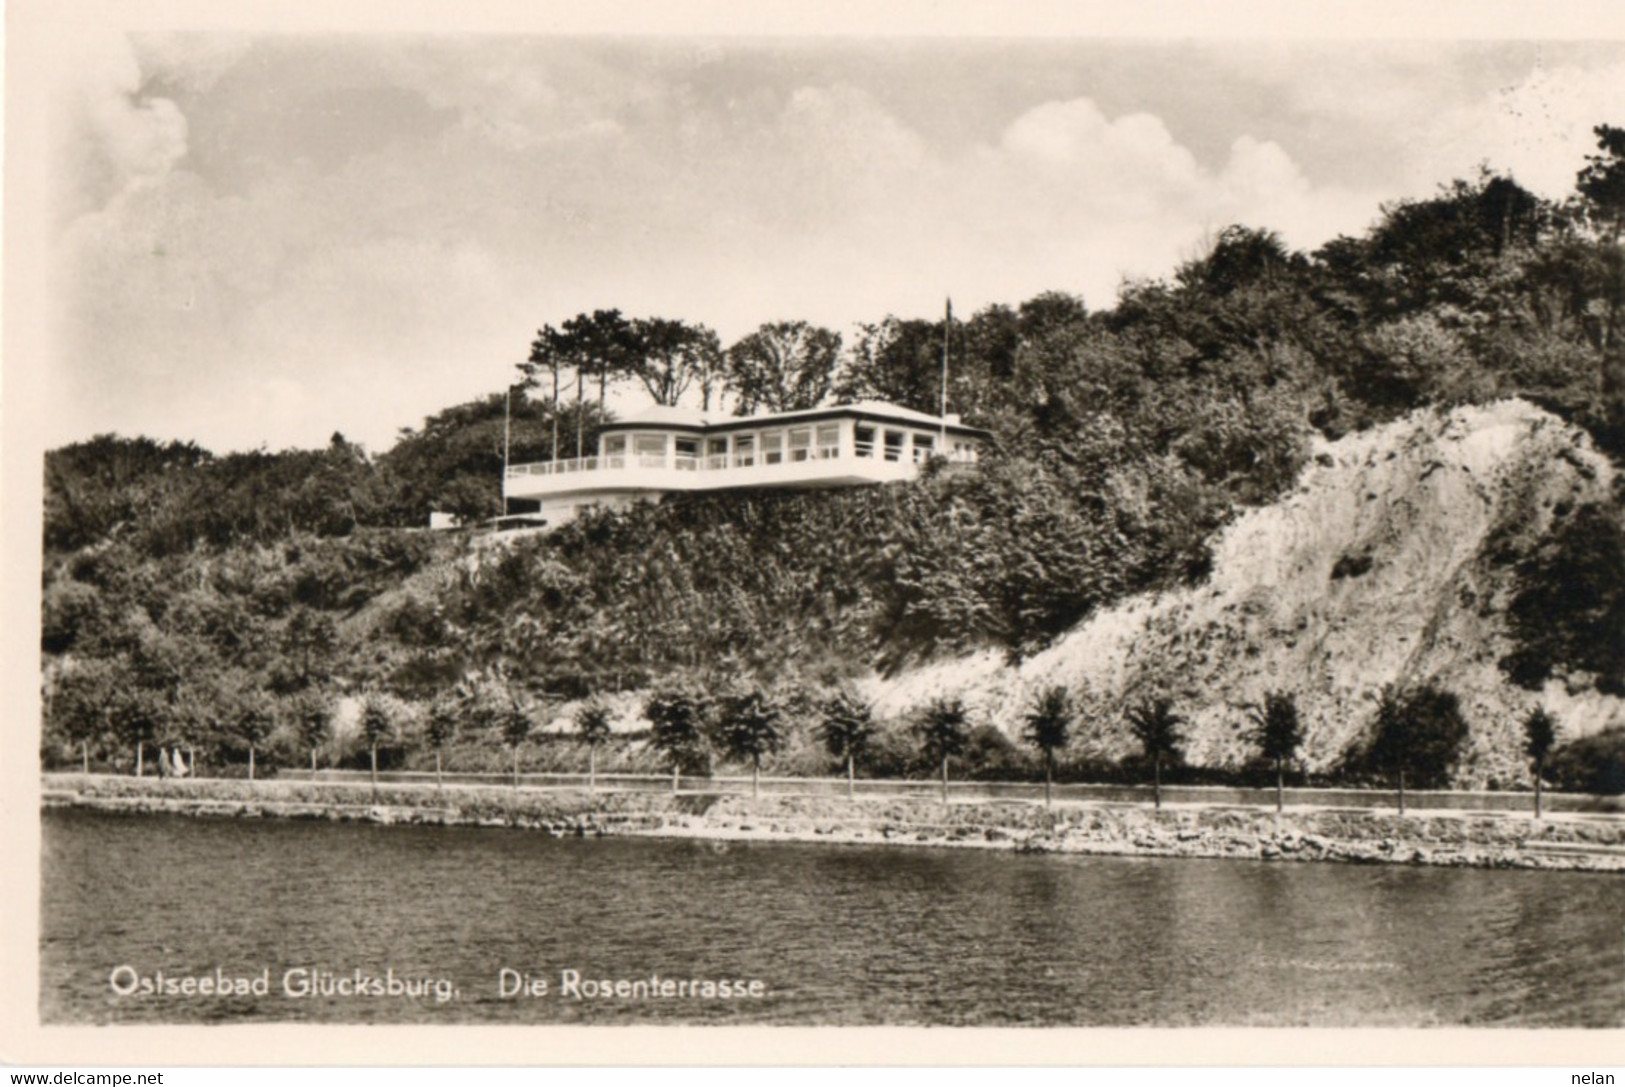 OSTSEEBAD GLUCKSBURG - DIE ROSENTERRASSE - REAL PHOTO - F.P. - Gluecksburg